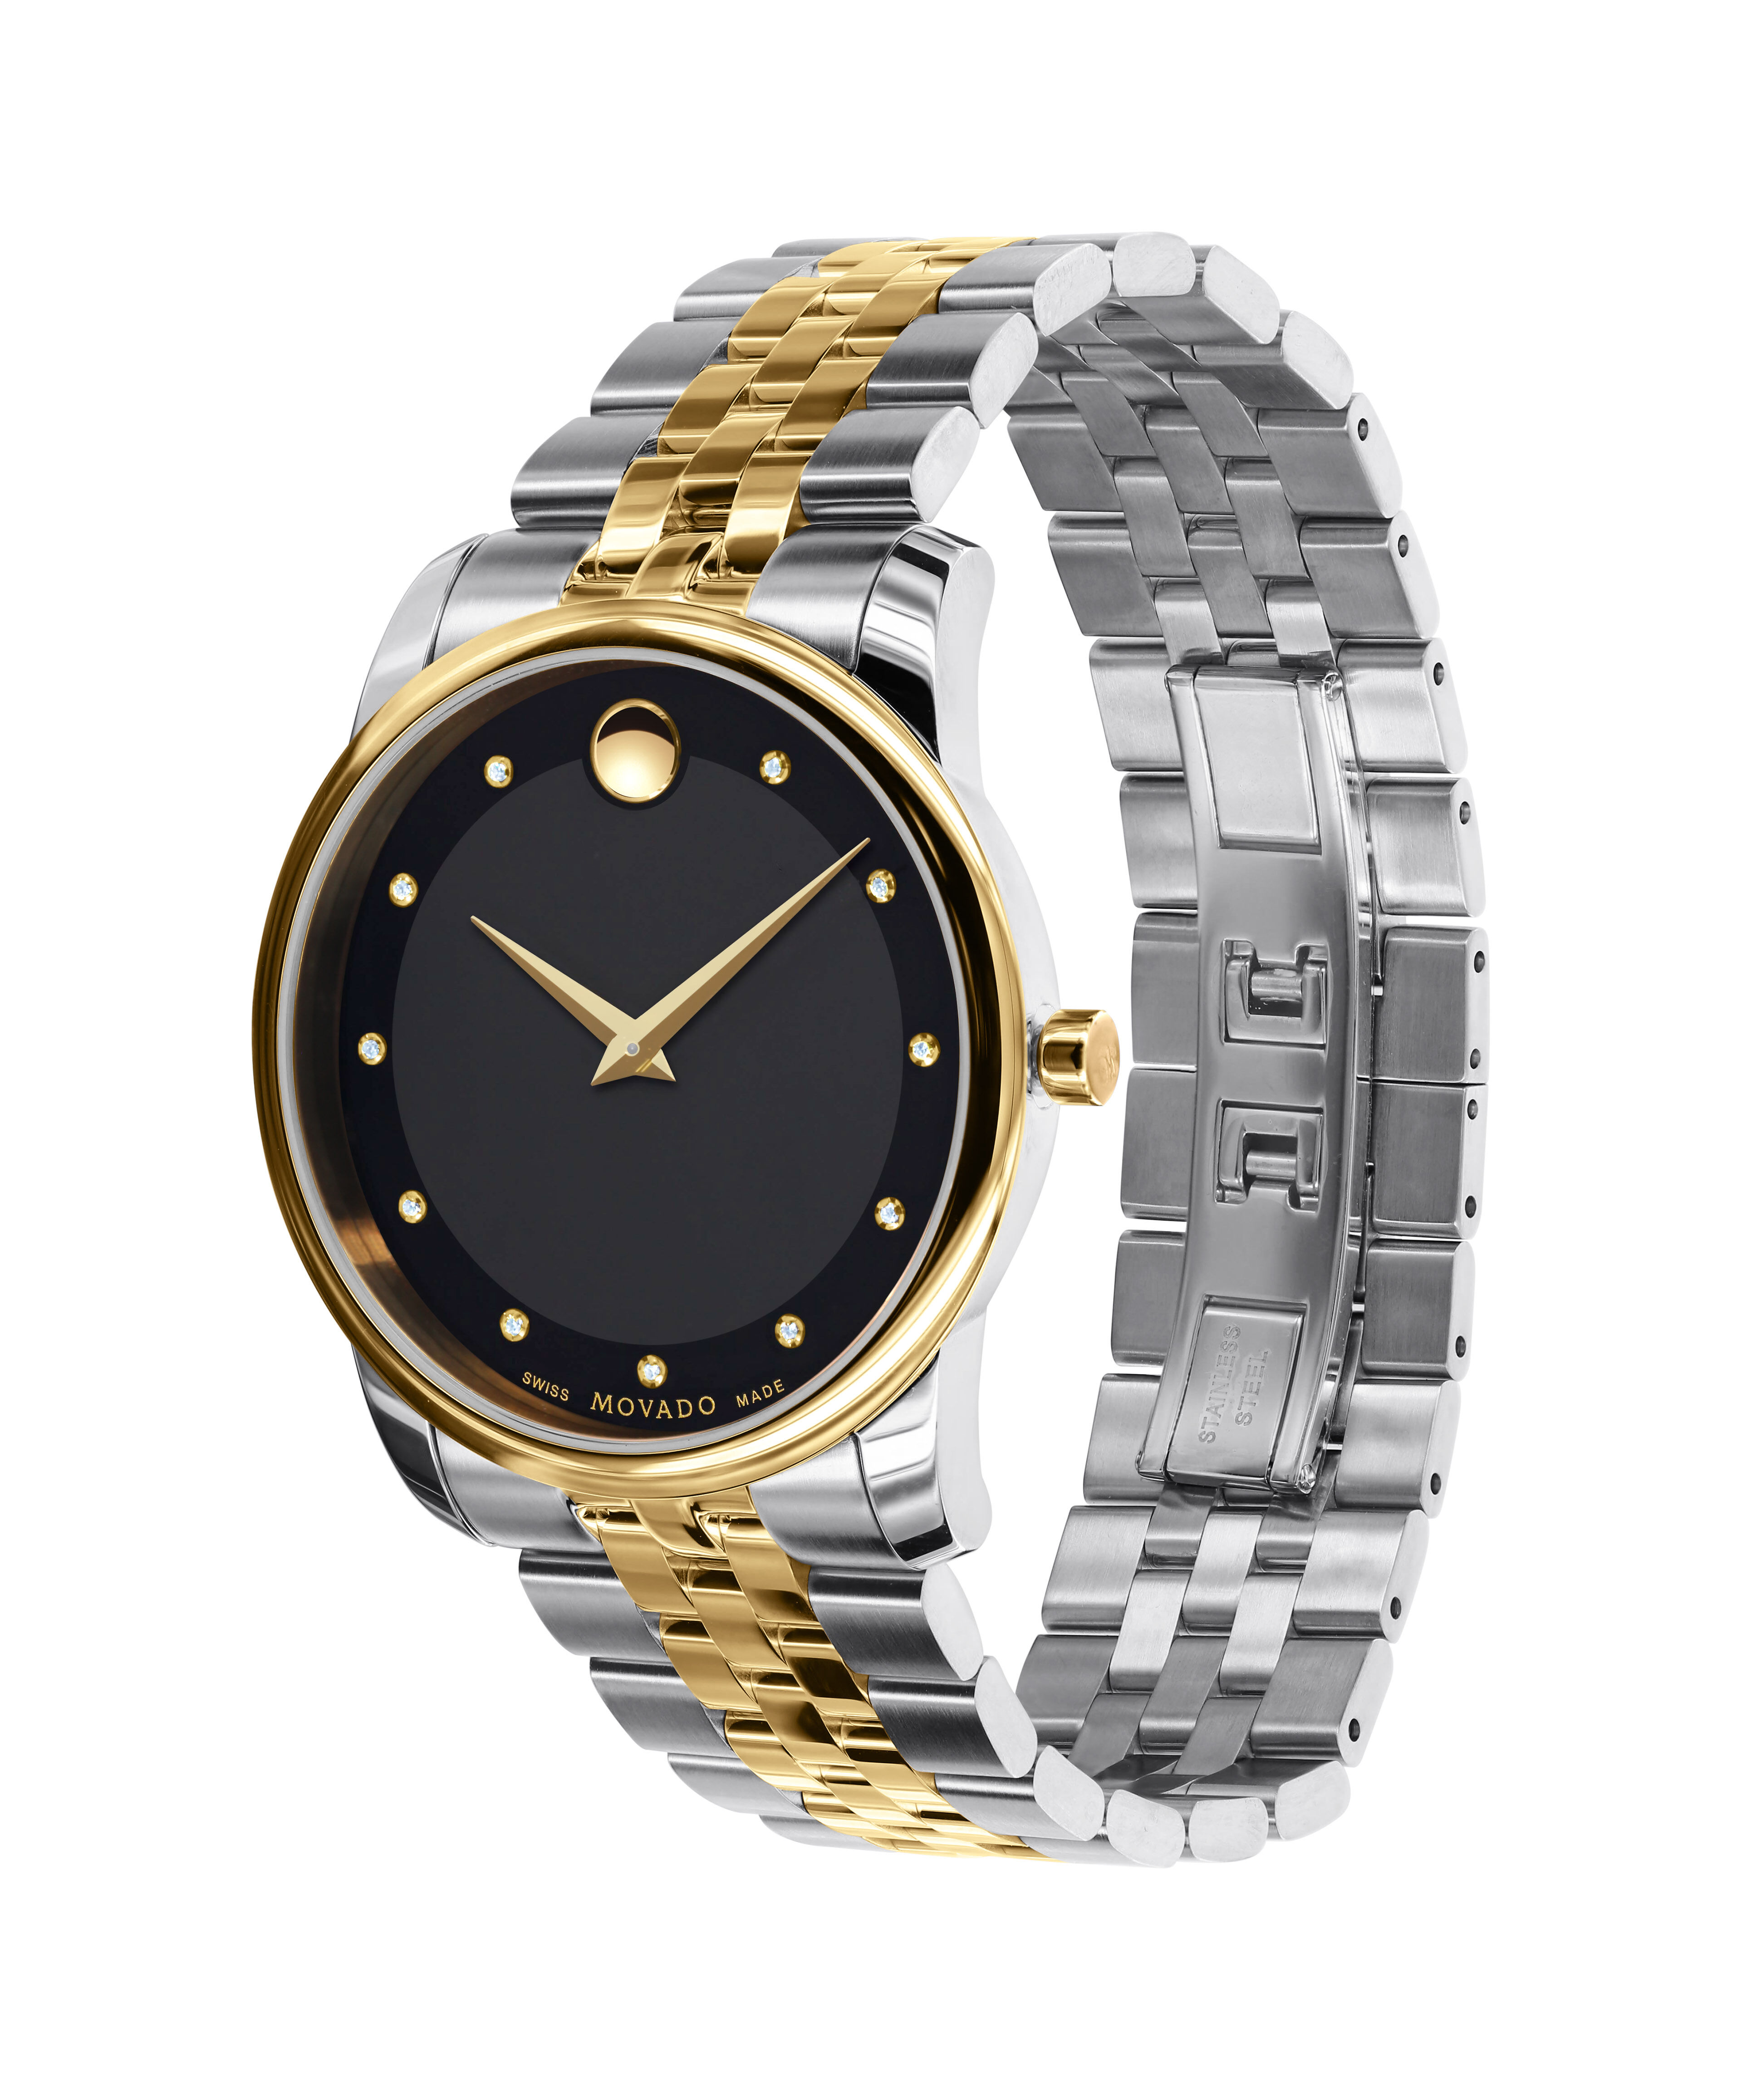 Rolex Watch Replica Paypal